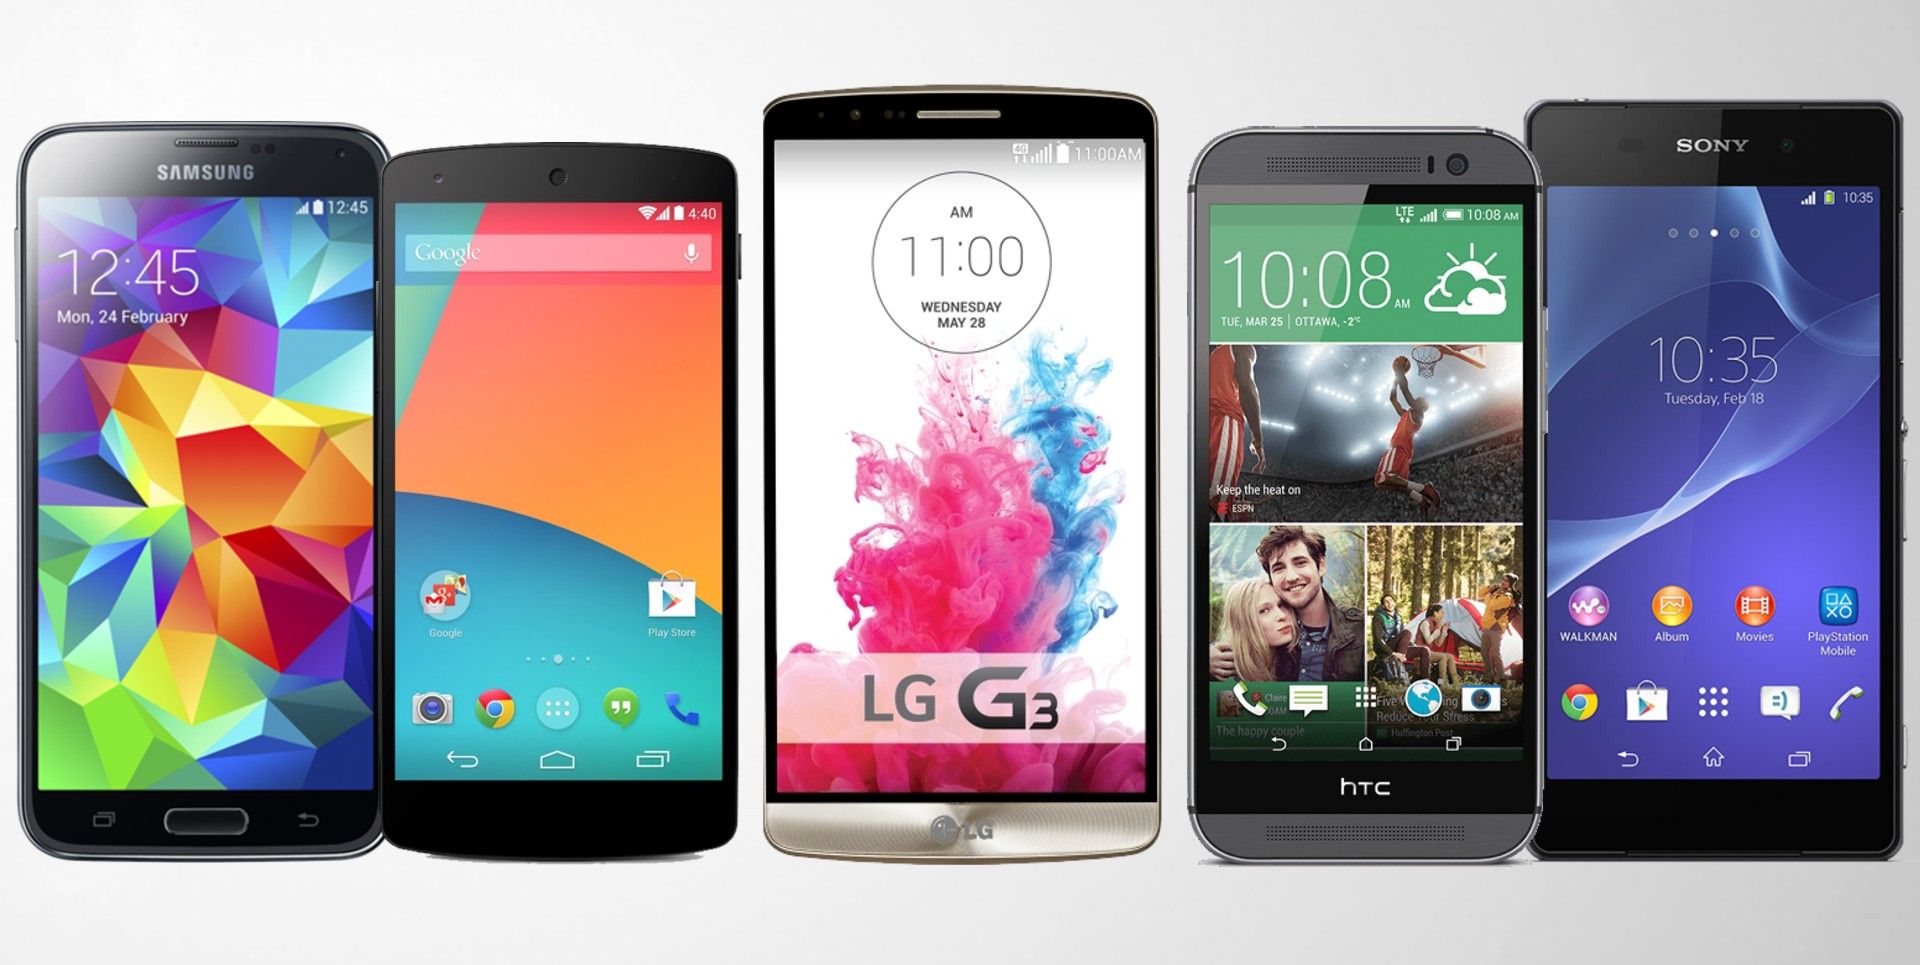 LG-G3-Compairson-G3-vs-Nexus-5-vs-Galaxy-S5-vs-HTC-One-M8-vs-Xperia-Z2